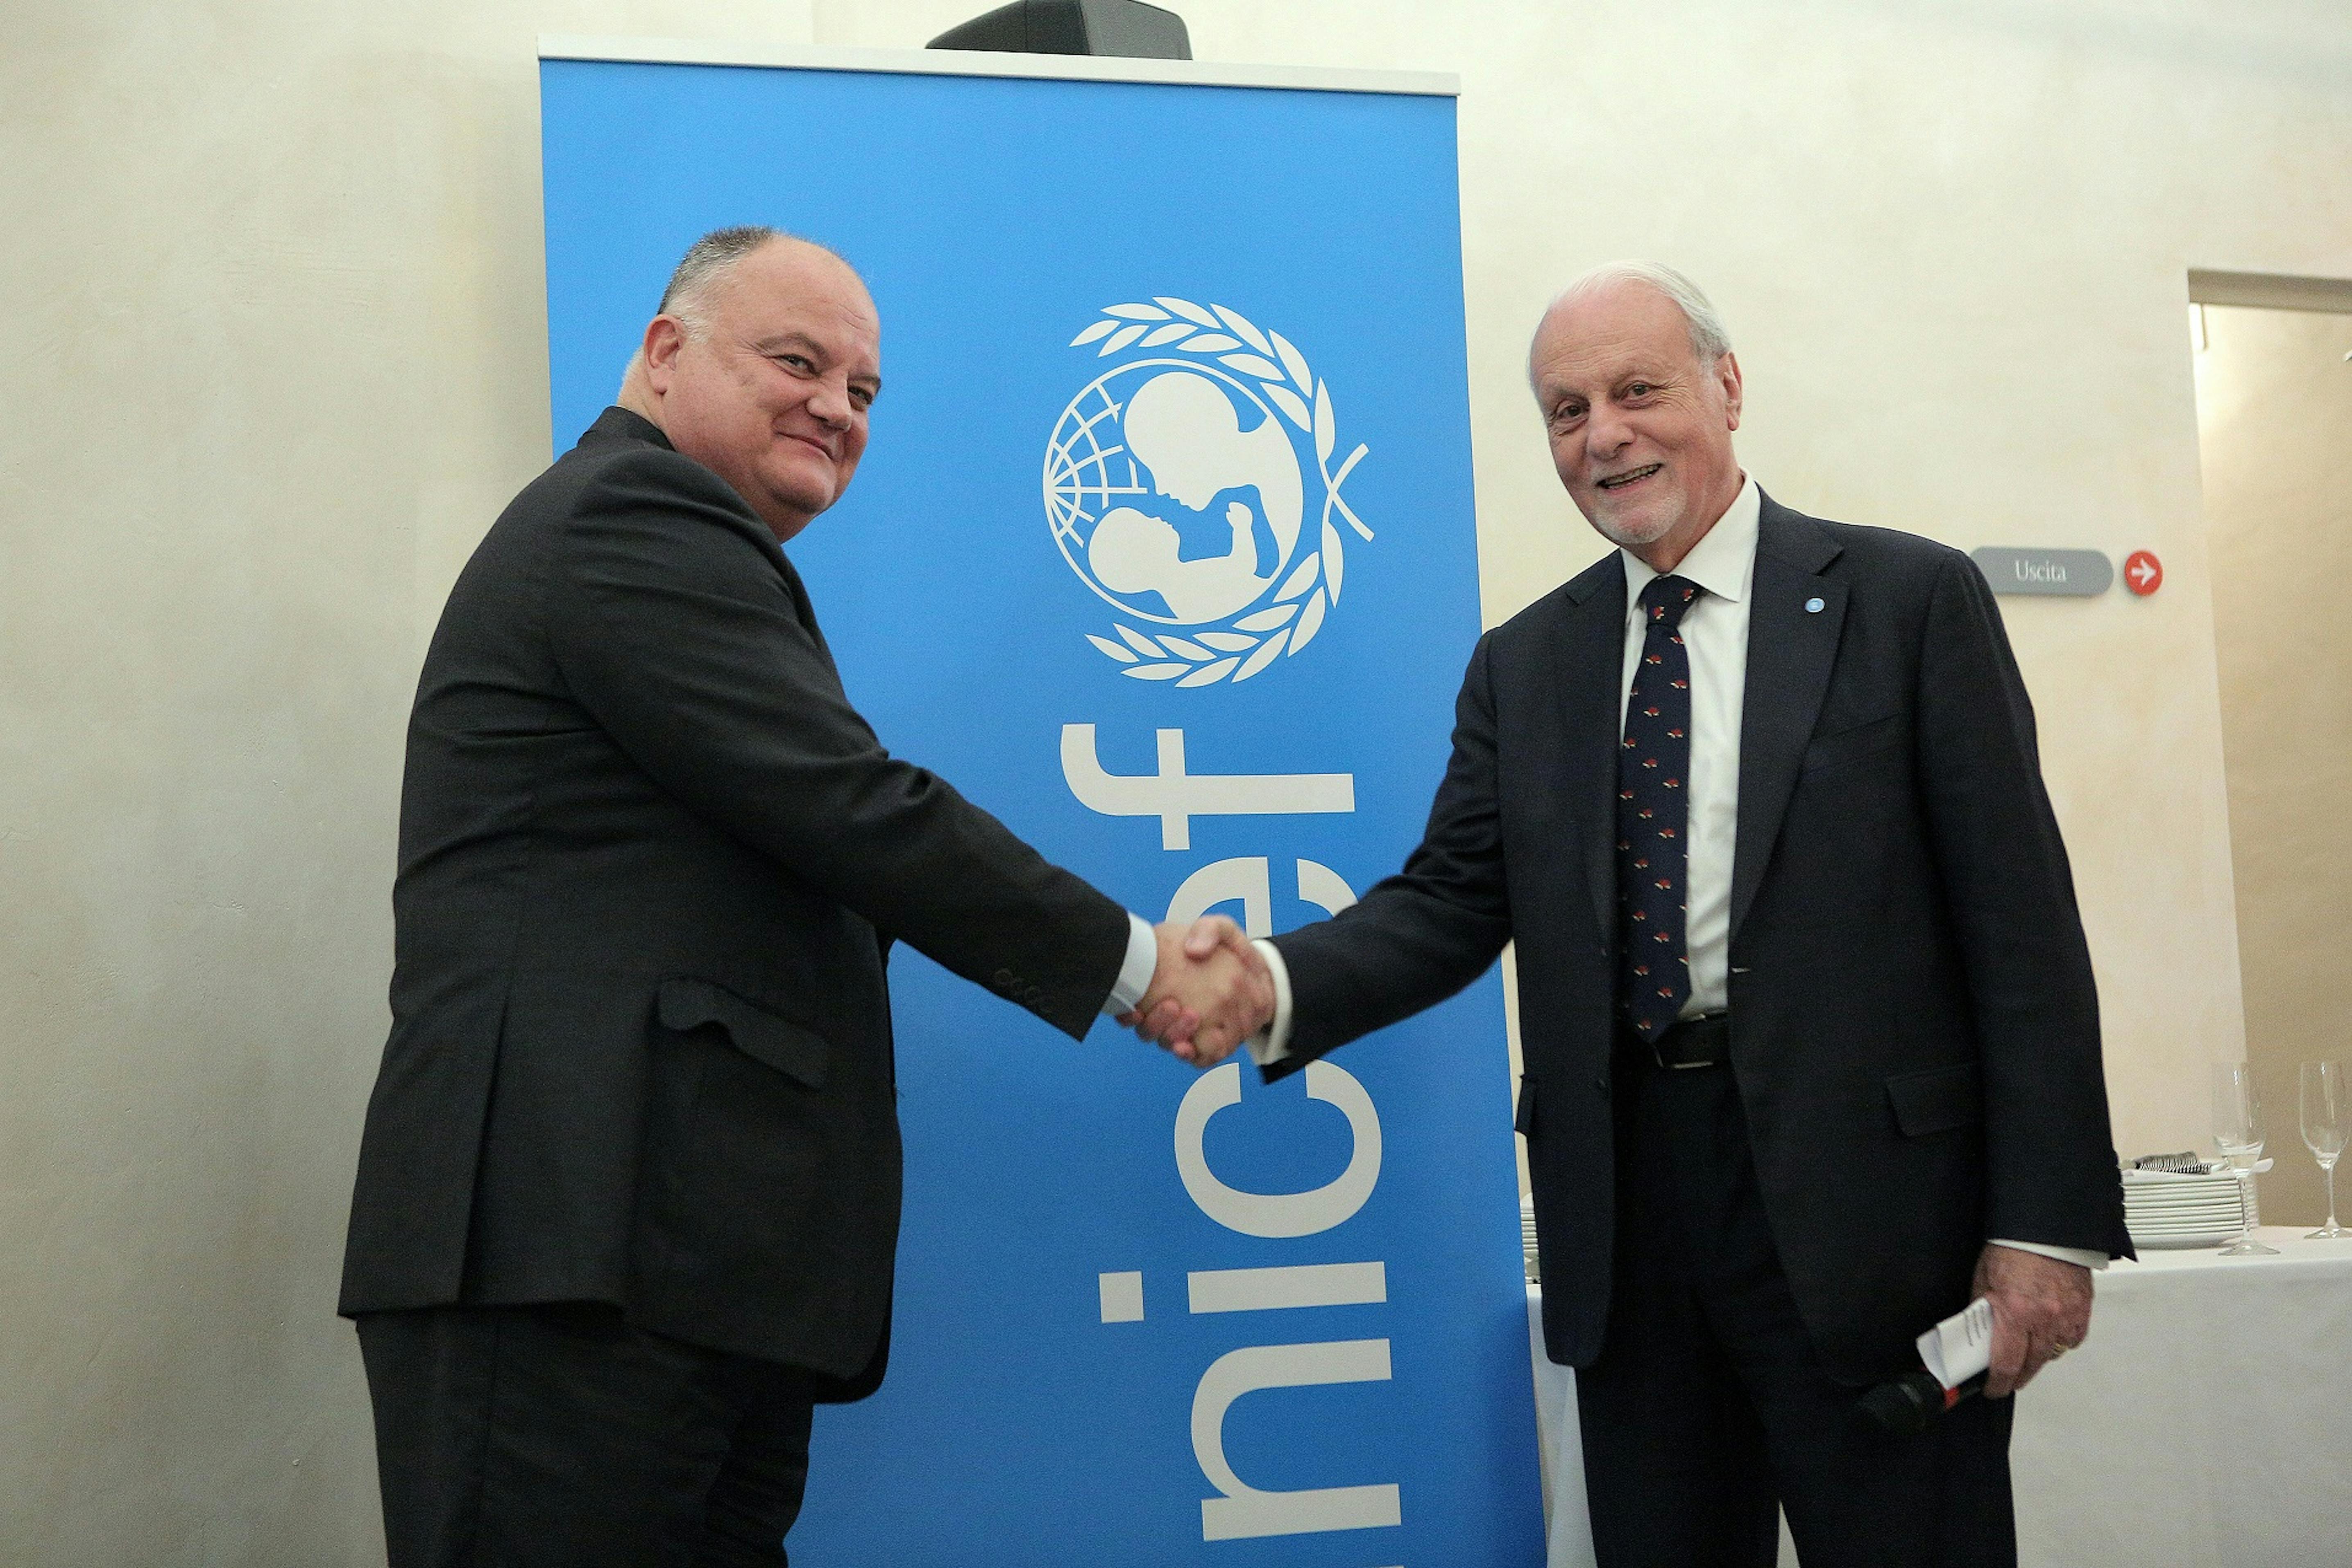 Nella foto Giacomo Guerrera, presidente Unicef Italia, e Sergi Loughney, direttore dell' Abertis